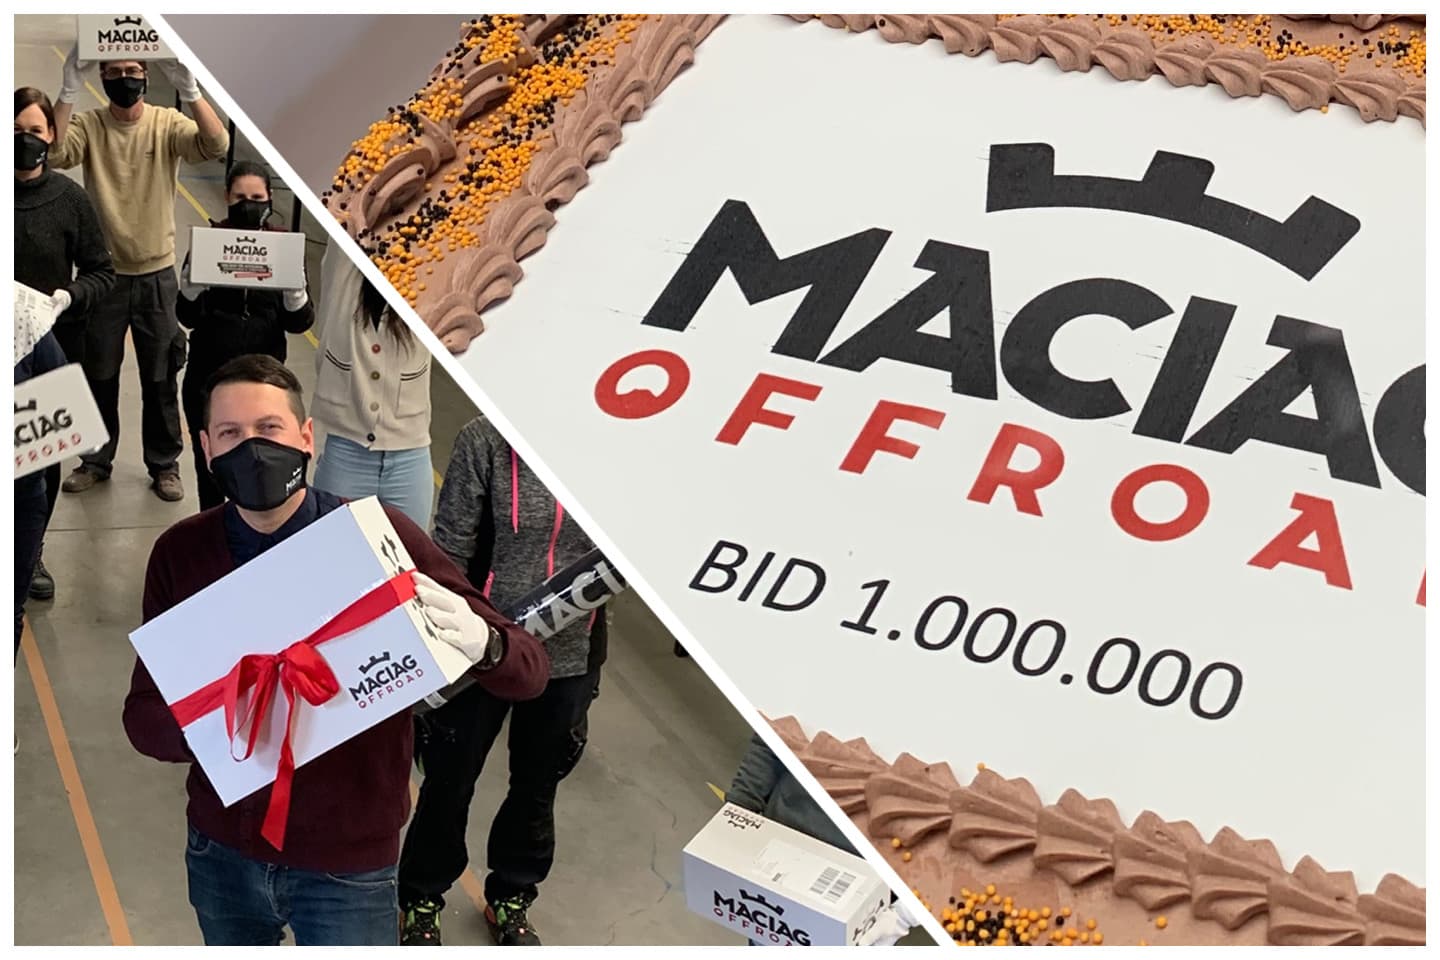 Maciag Offroad feiert Meilenstein – 1.000.000 Bestellungen verschickt!